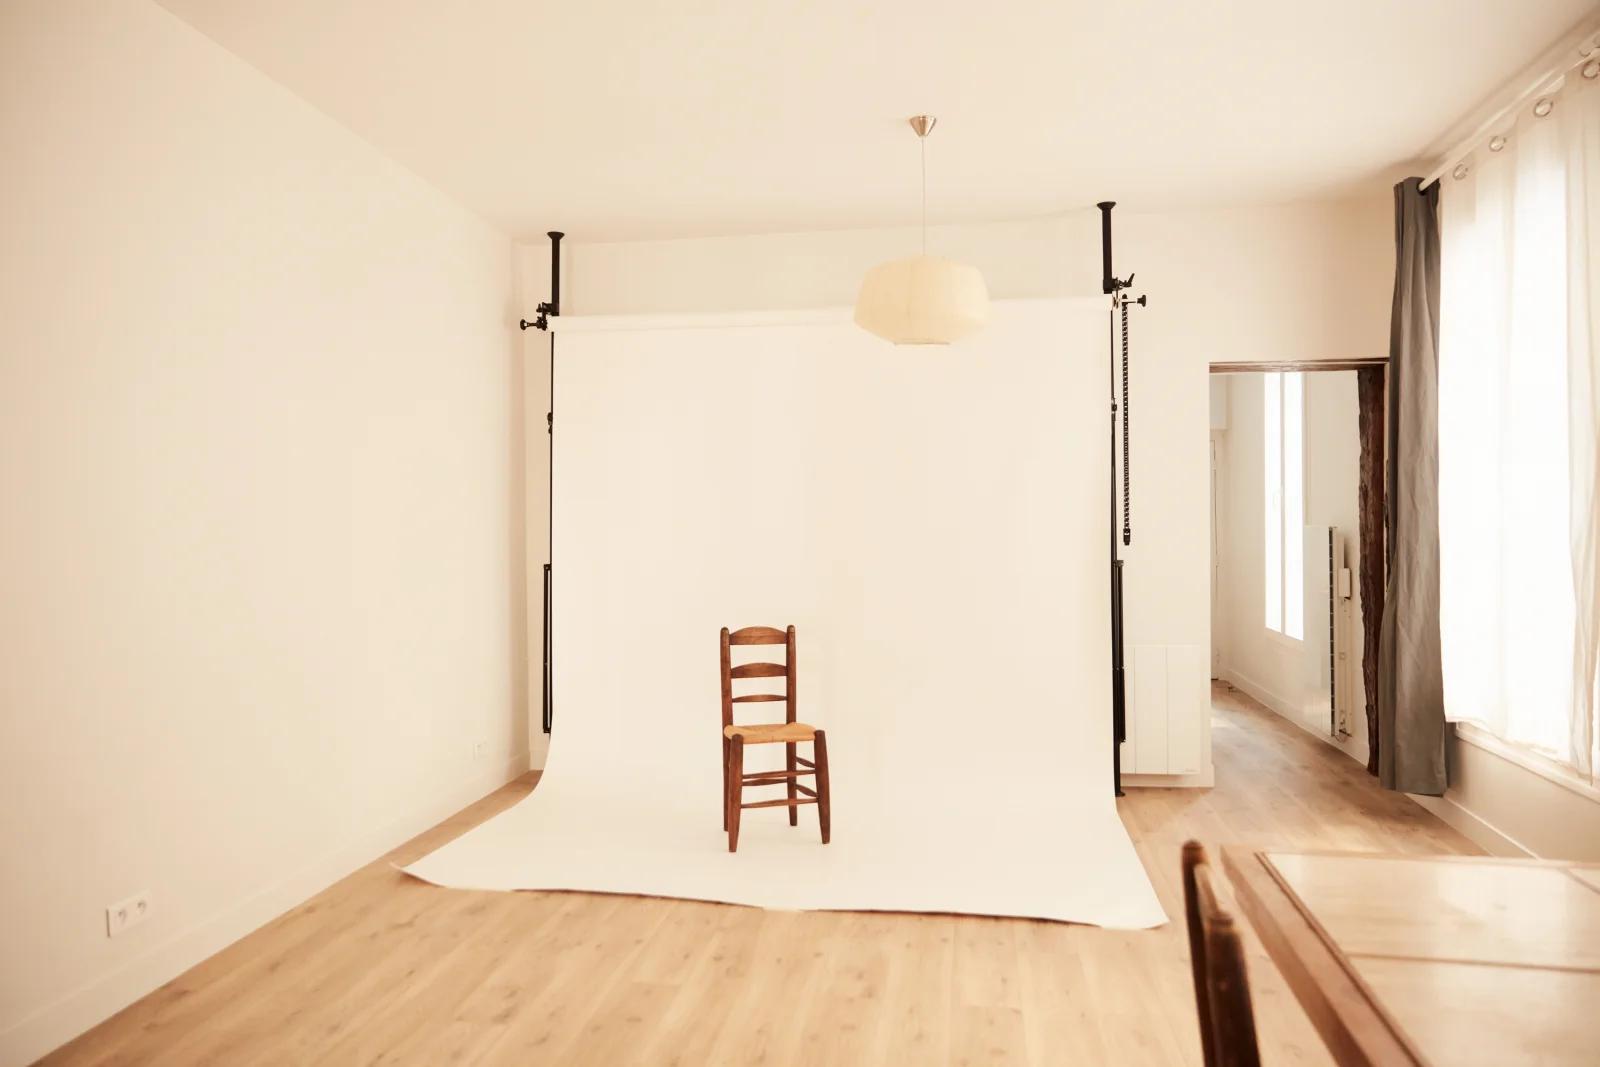 Chambre dans Studio de photographe au style épuré - 1